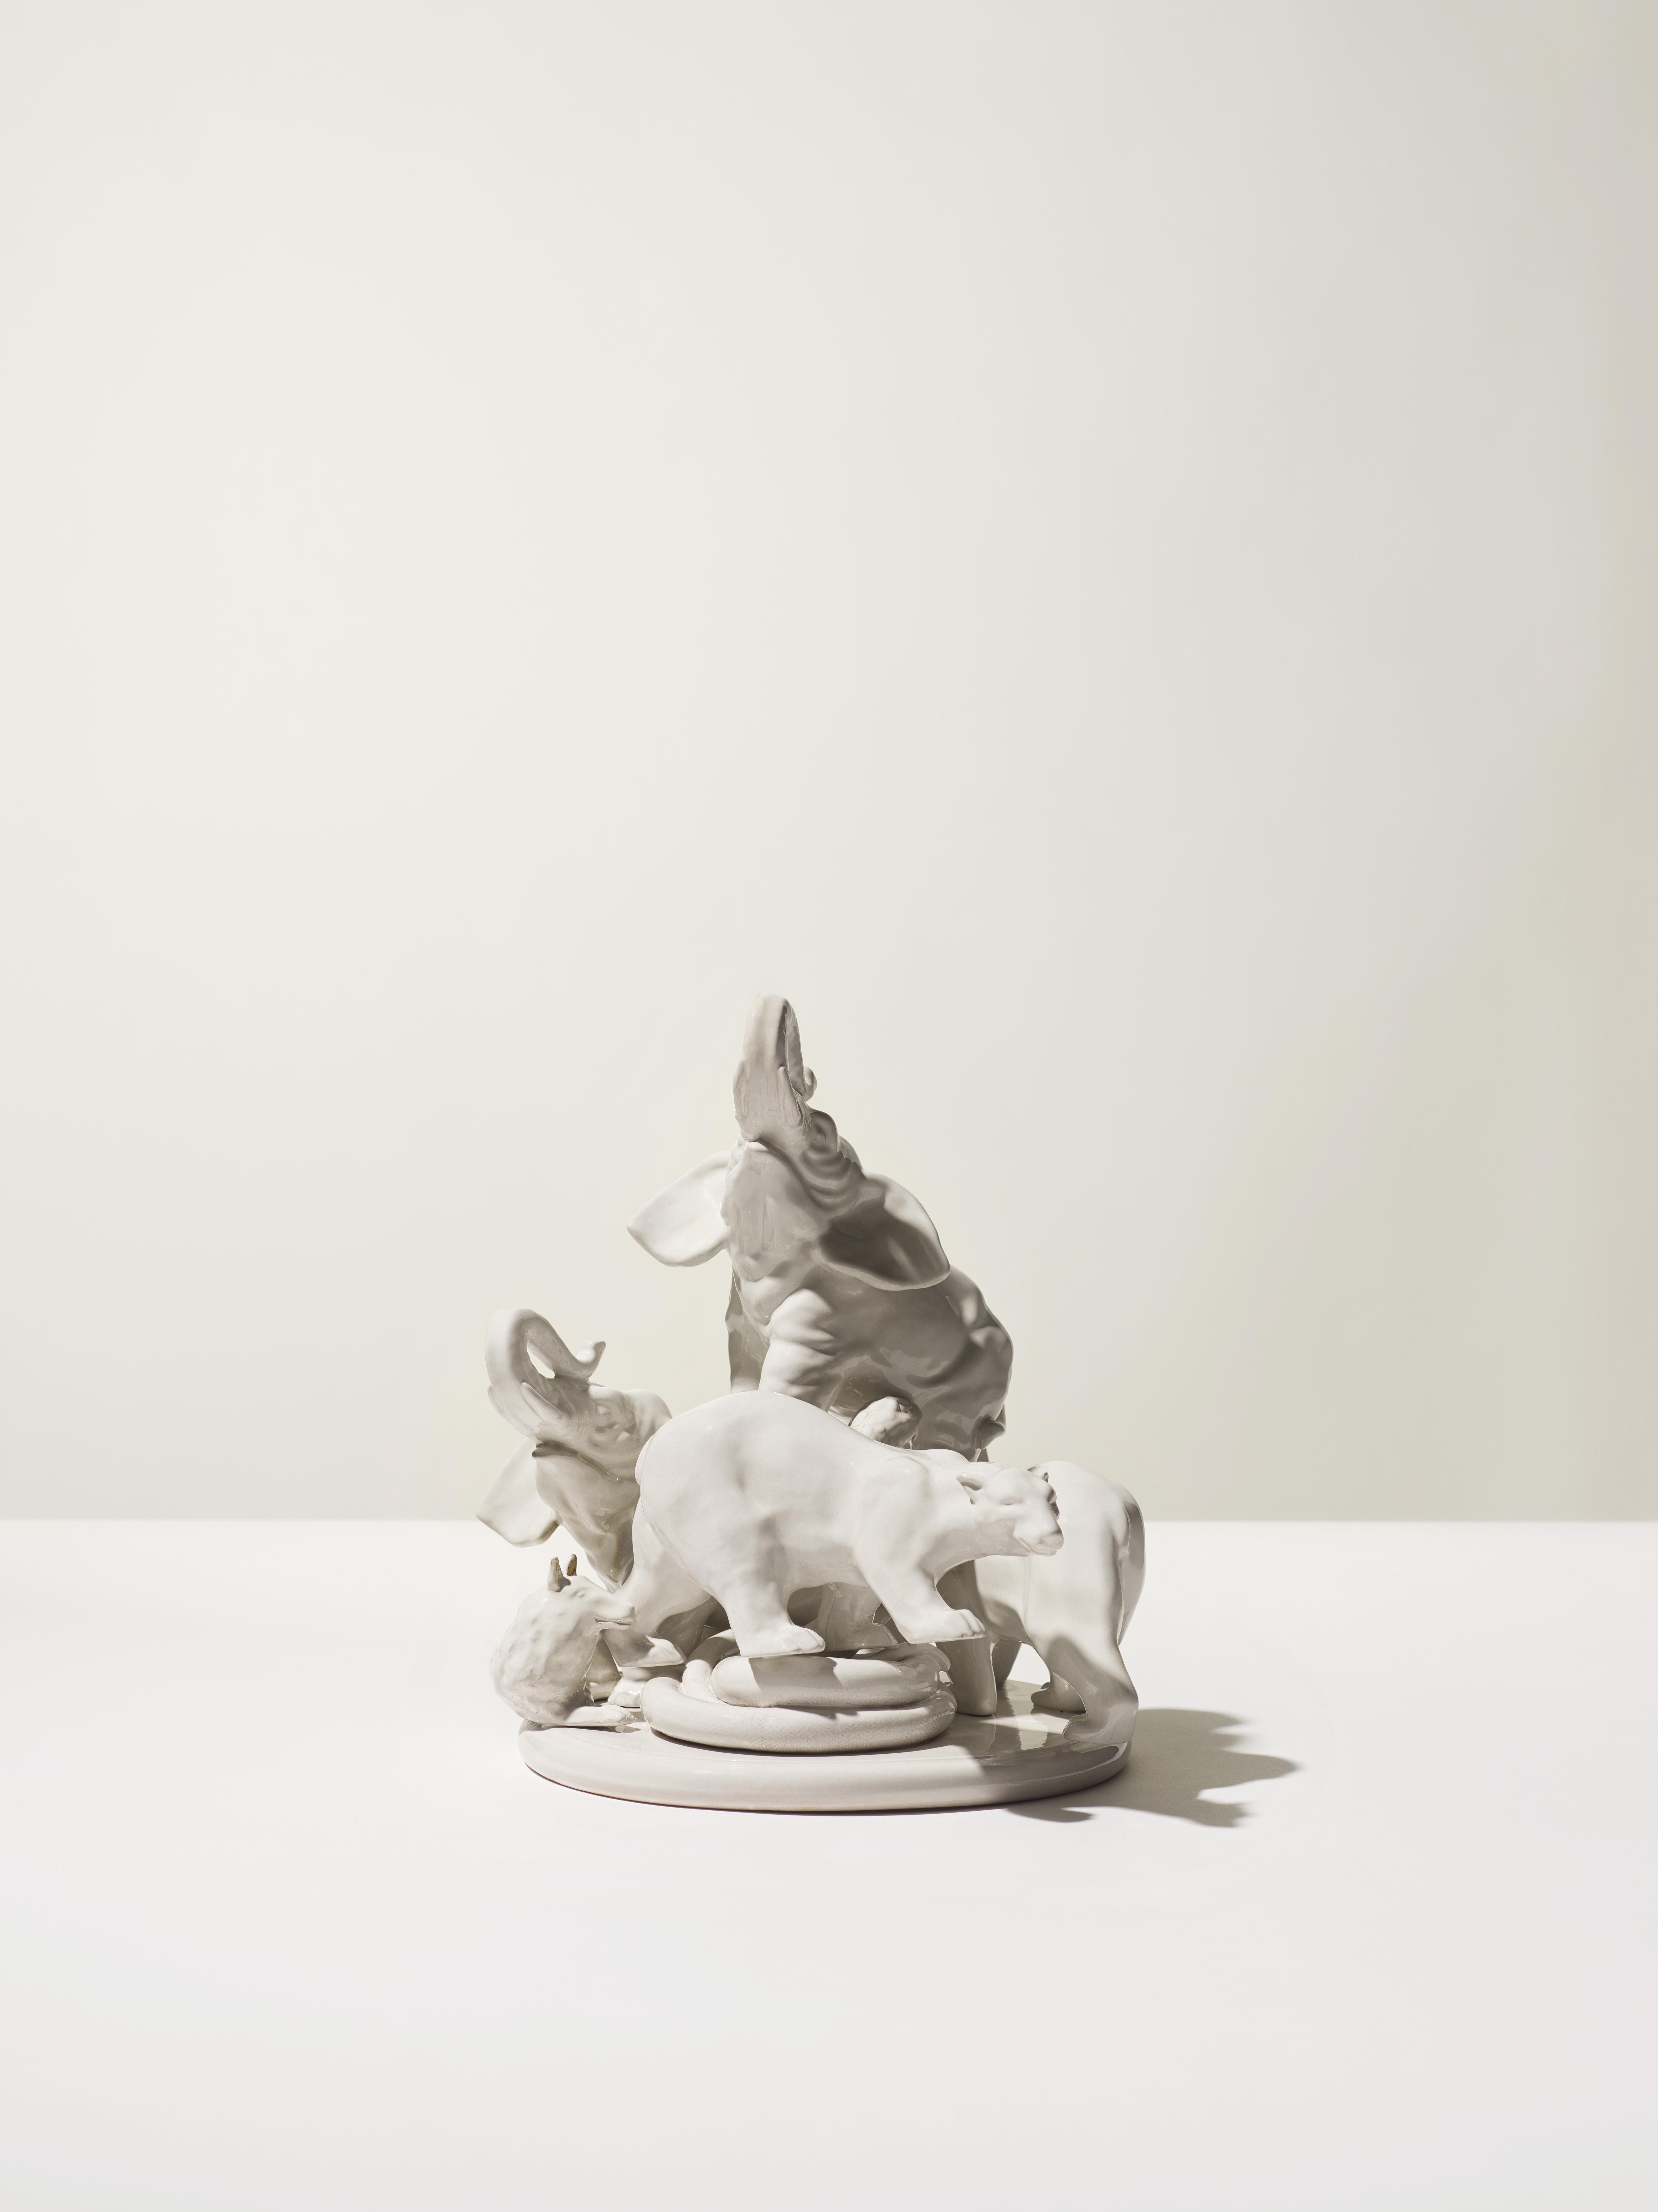 Sculpture du XXIe siècle représentant deux éléphants en blanc antique, réalisée par Ceramica Gatti, Italie. Pièce unique fabriquée en Italie, cette poterie a été conçue par Andrea Anastasio dans l'historique Bottega Ceramica Gatti 1928 à Faenza,